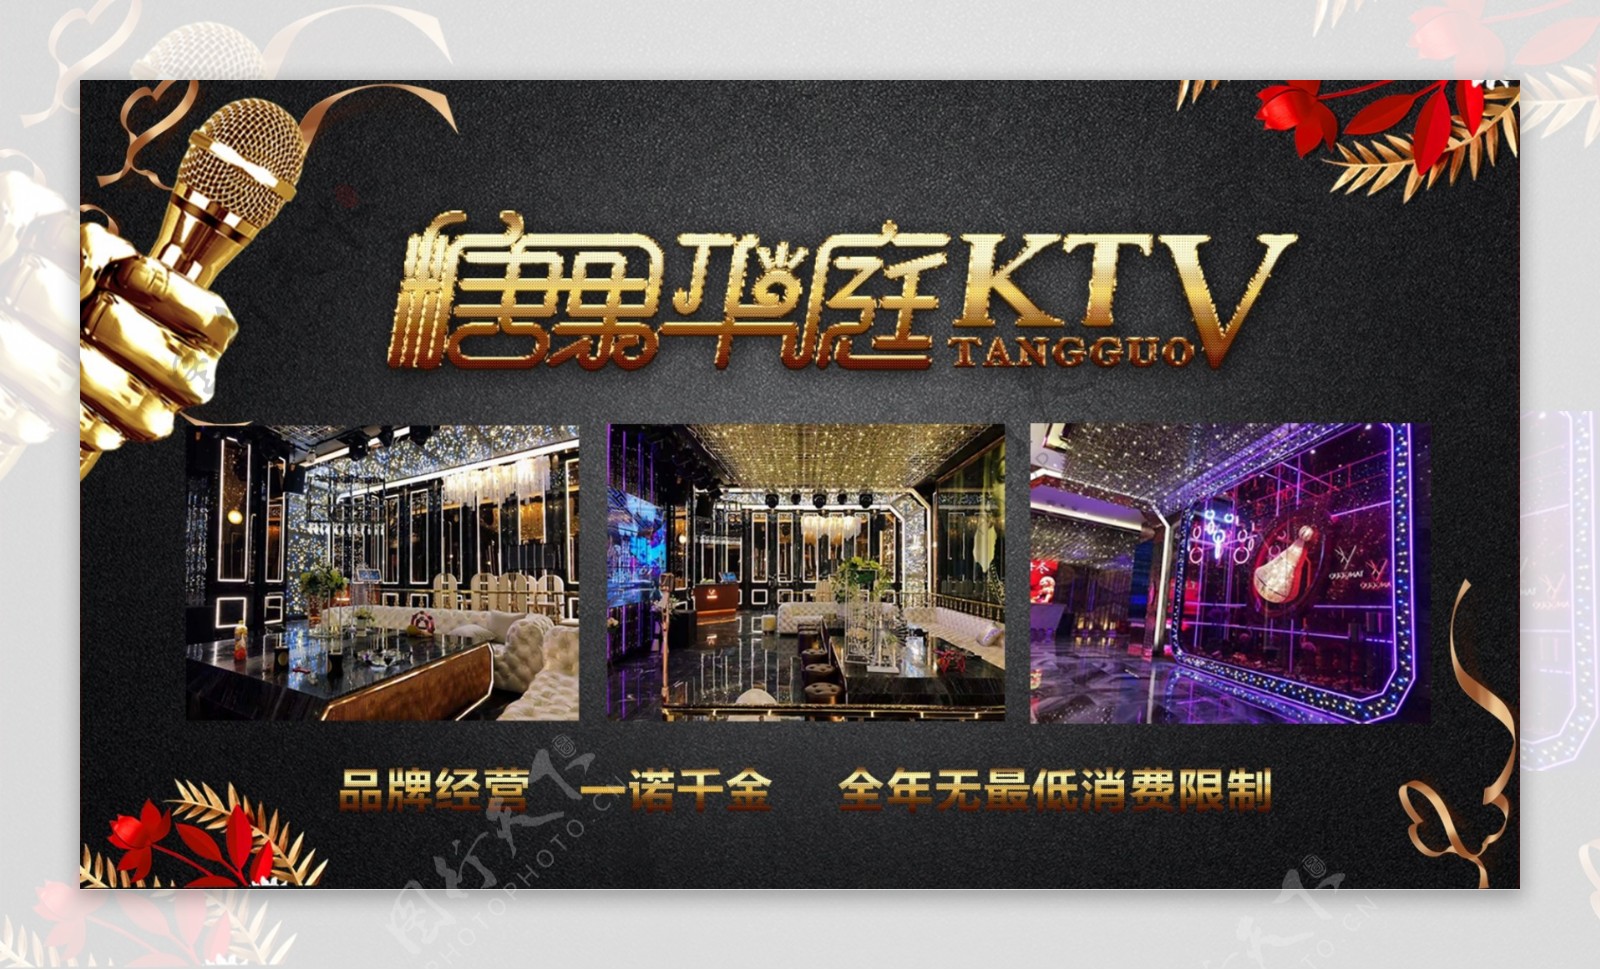 歌厅酒吧KTV广告宣传图片